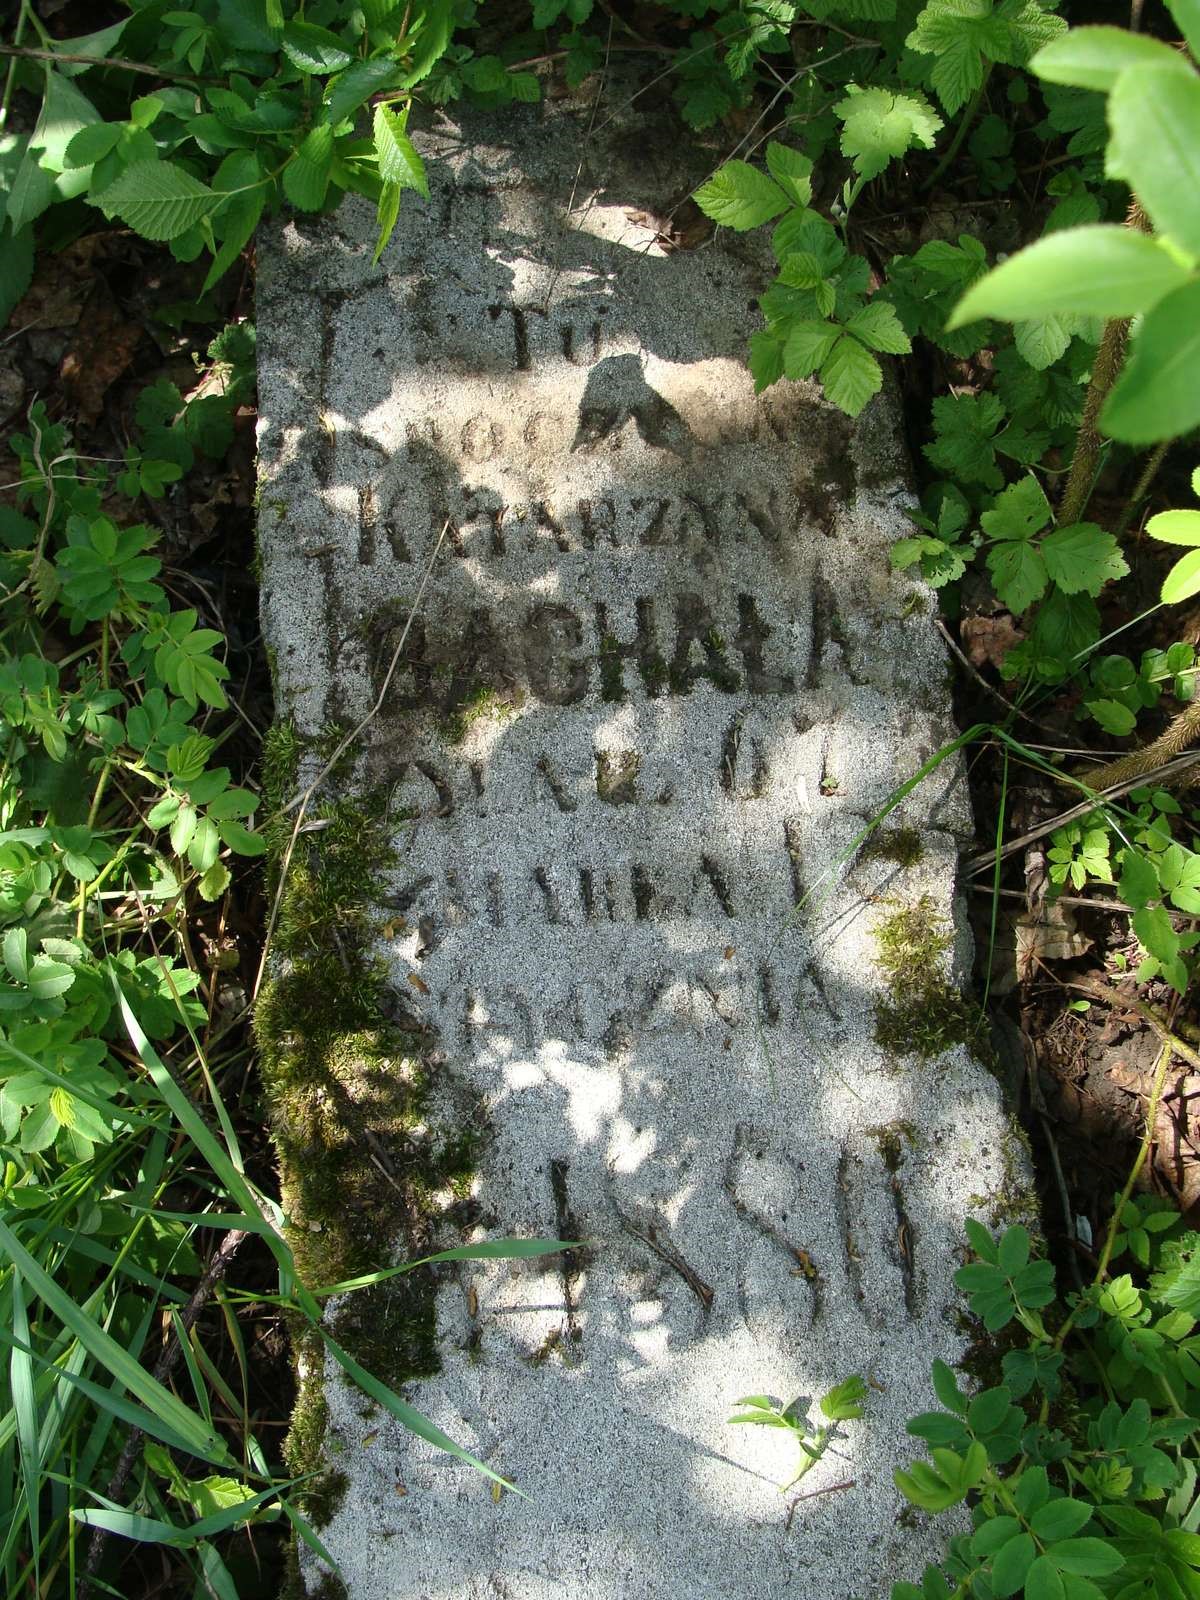 Inskrypcja z nagrobka Katarzyny Bachały, cmentarz w Łozowej